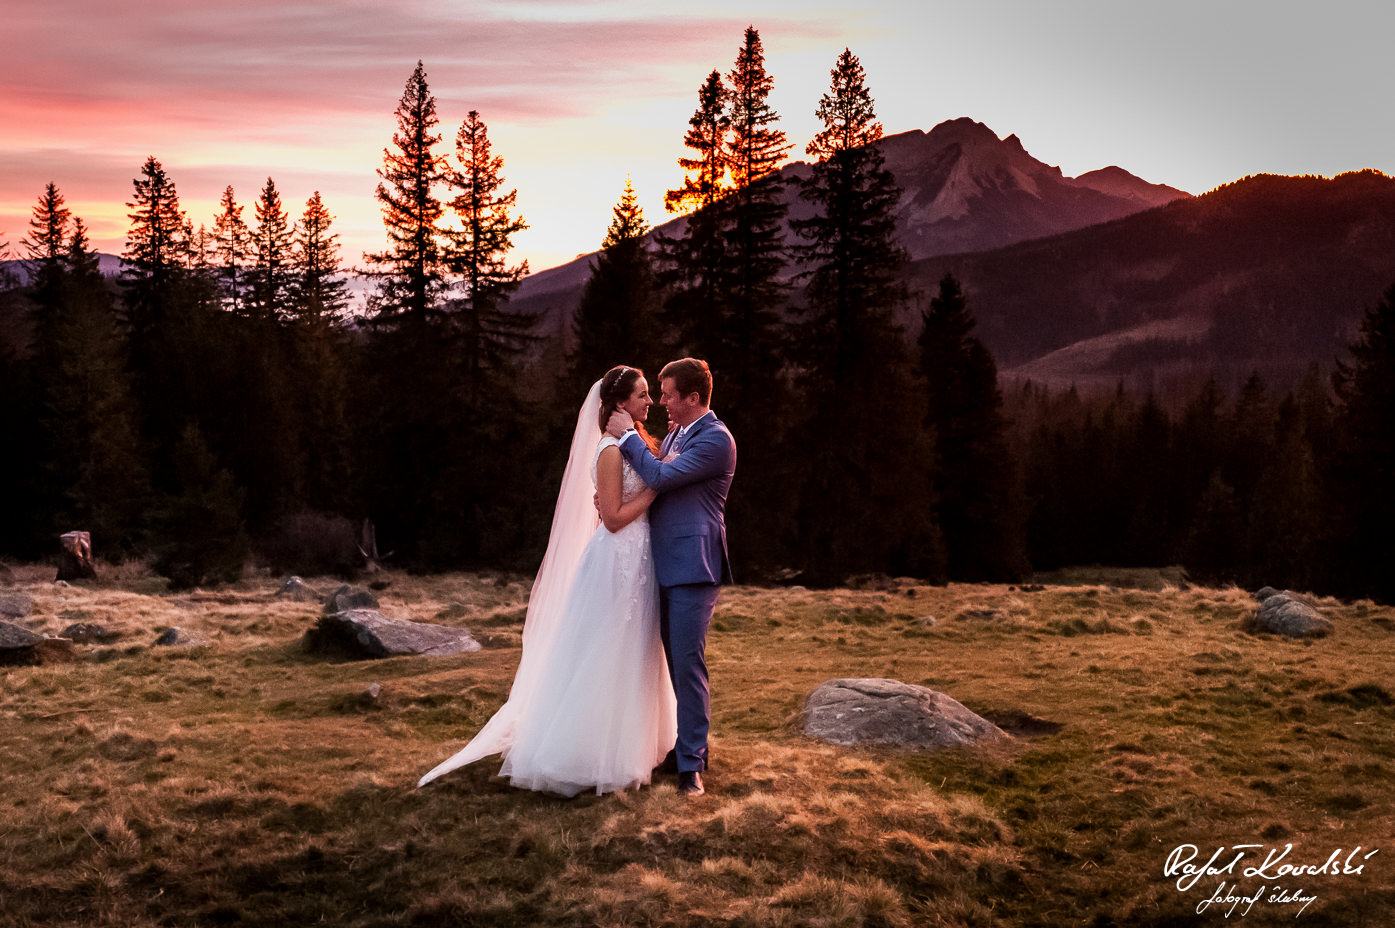 Plener ślubny w Górach czerwień wschodu słońca otula światłem pozującą parę młodą